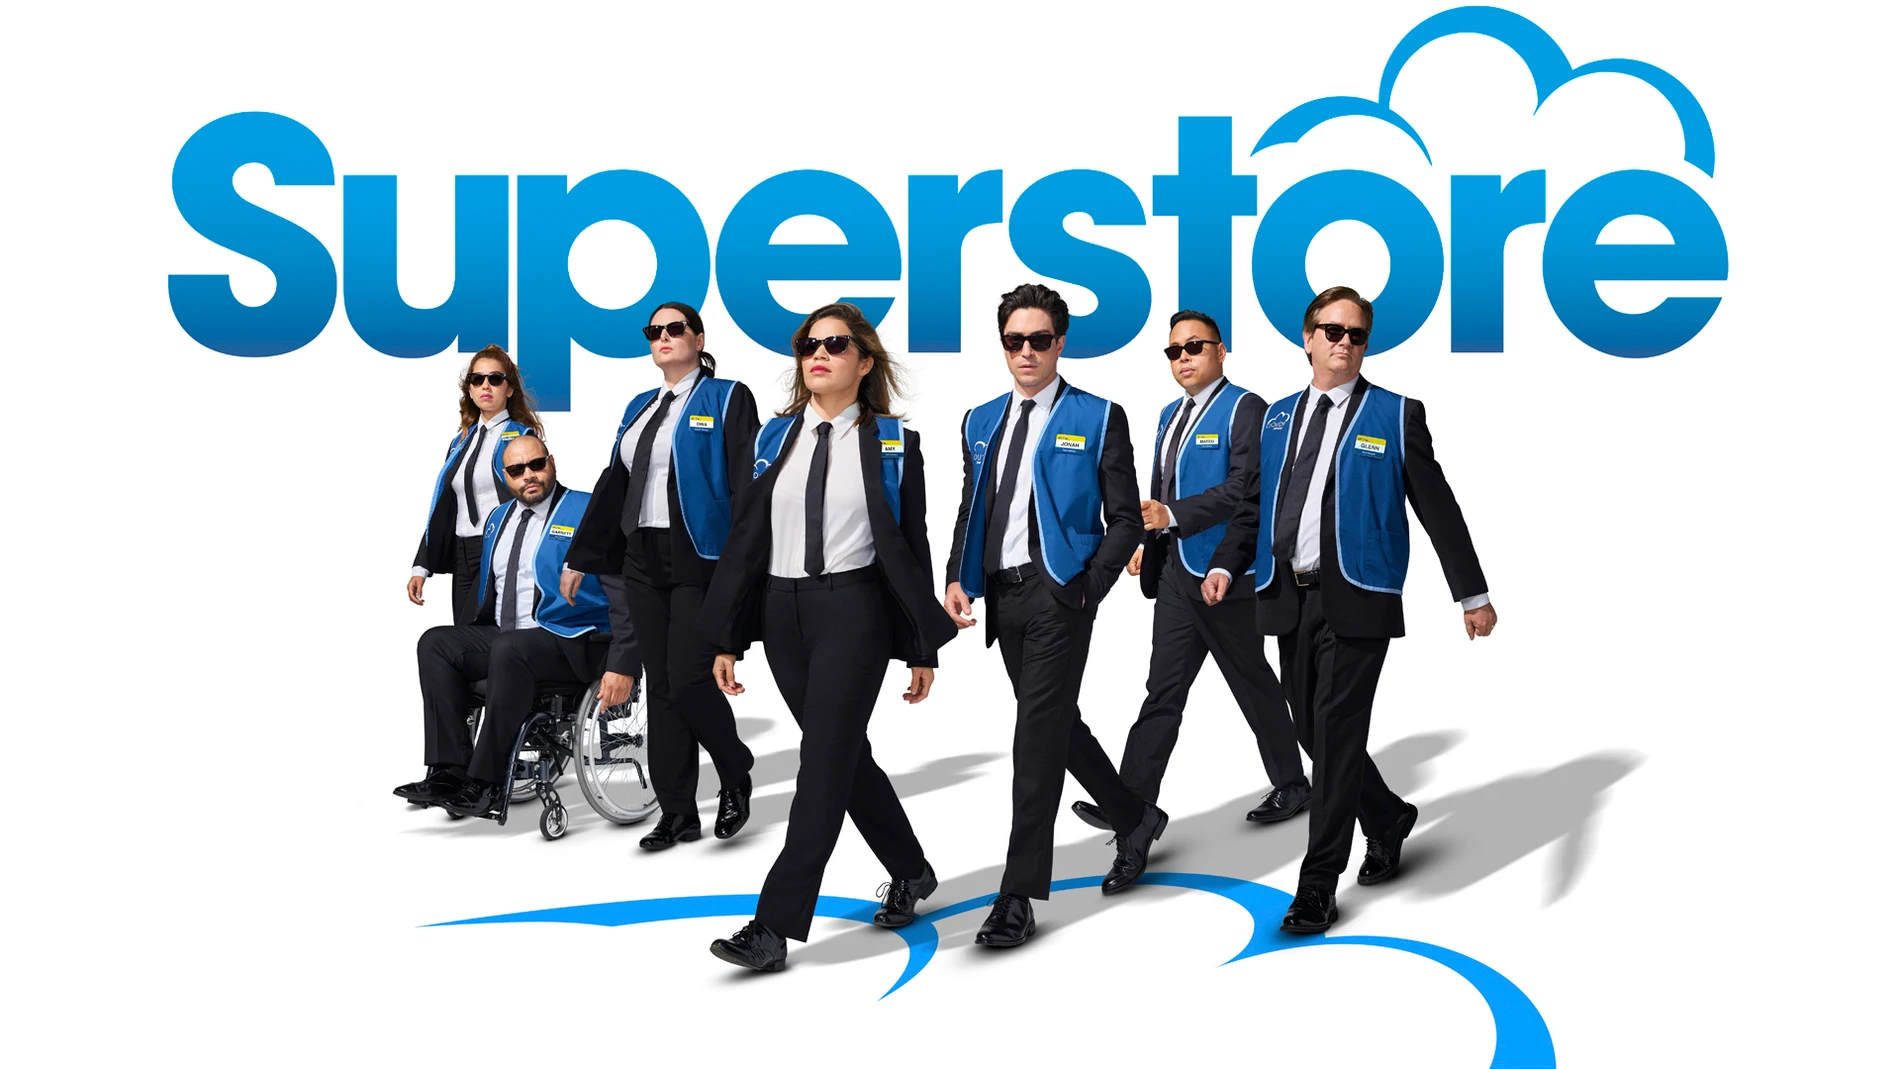 Así es ‘Superstore’, creada por Justin Spitzer (‘The Office’) y protagonizada y producida por America Ferrera (‘Betty’)